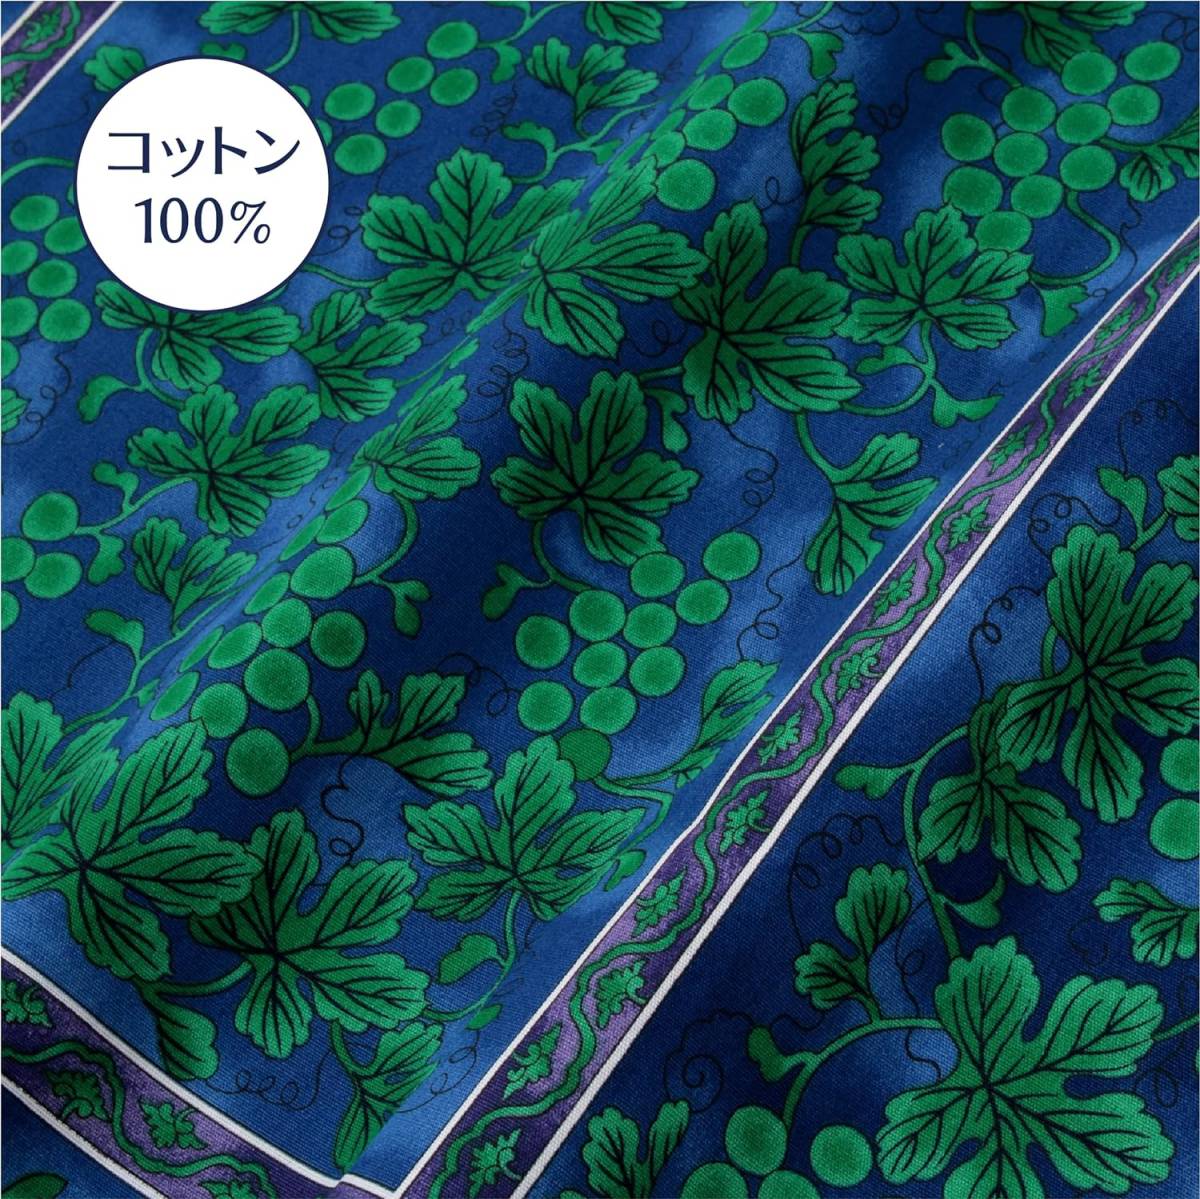 肌にやさしい座布団カバー コットン100% 西川 洗える ブルー 緑彩葡萄絵柄 綿100% 日本製 洗濯可能 触り心地抜群